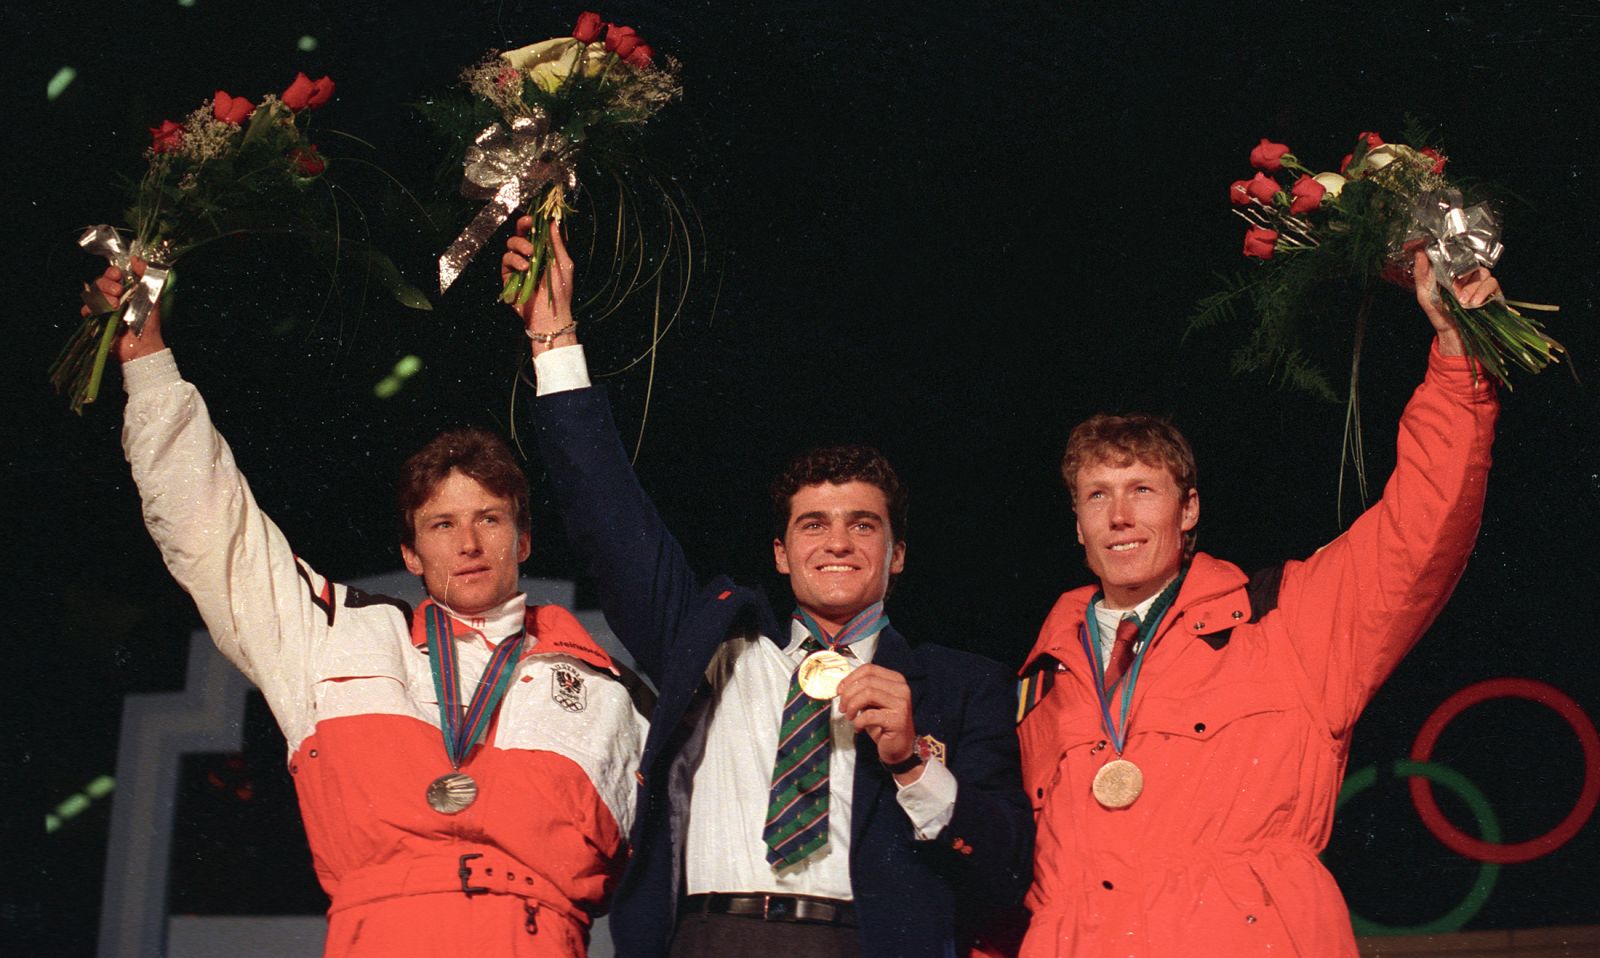 Tomba con la medalla de oro olímpica del Eslalom Gigante de Calgary 88.